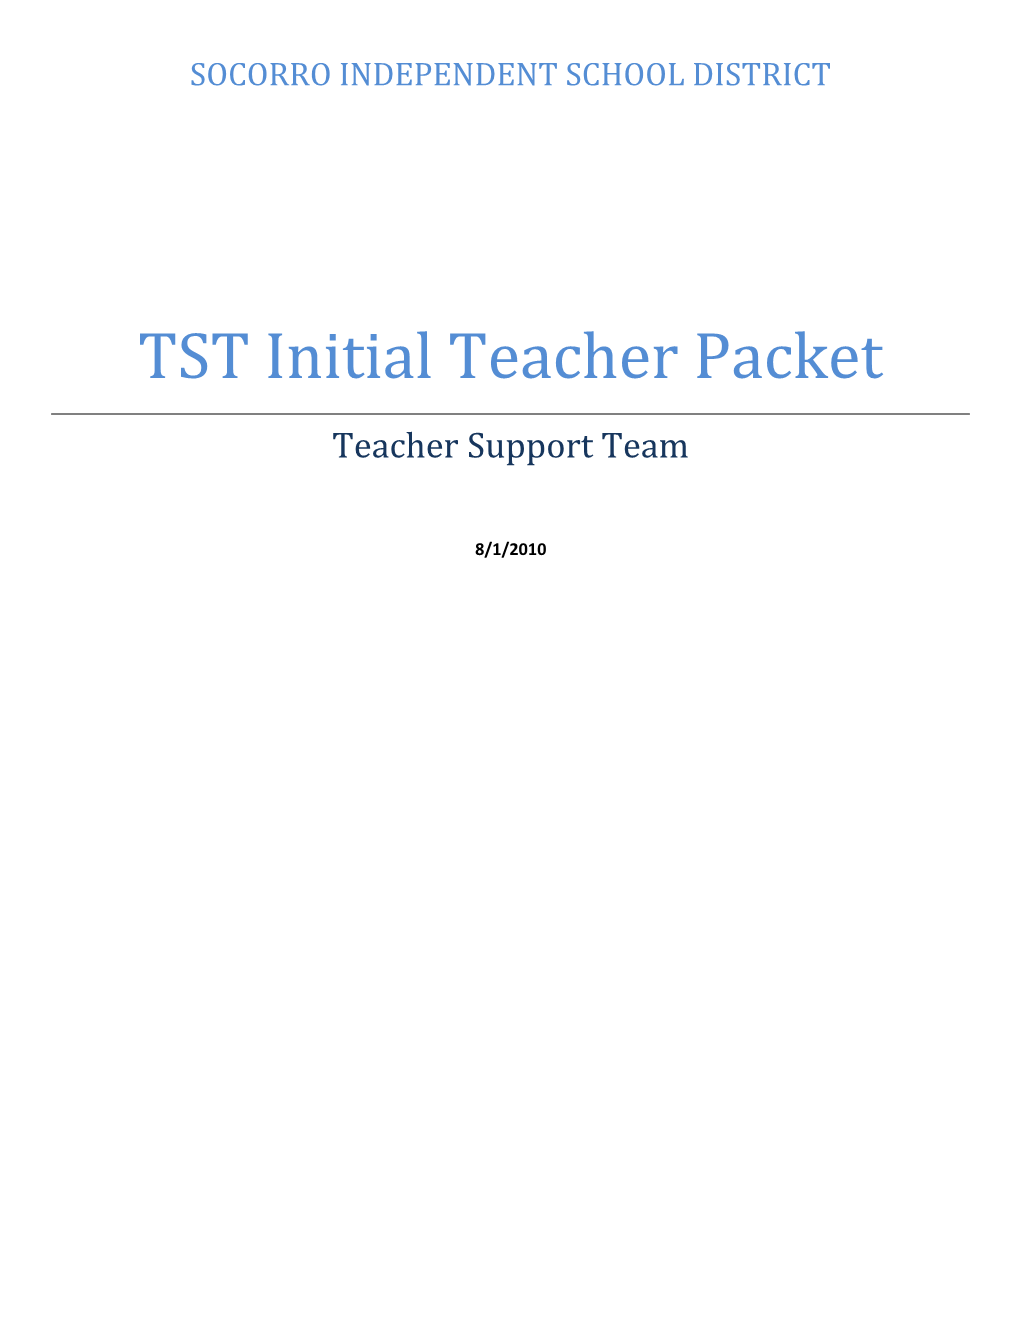 TST Initial Teacher Packet